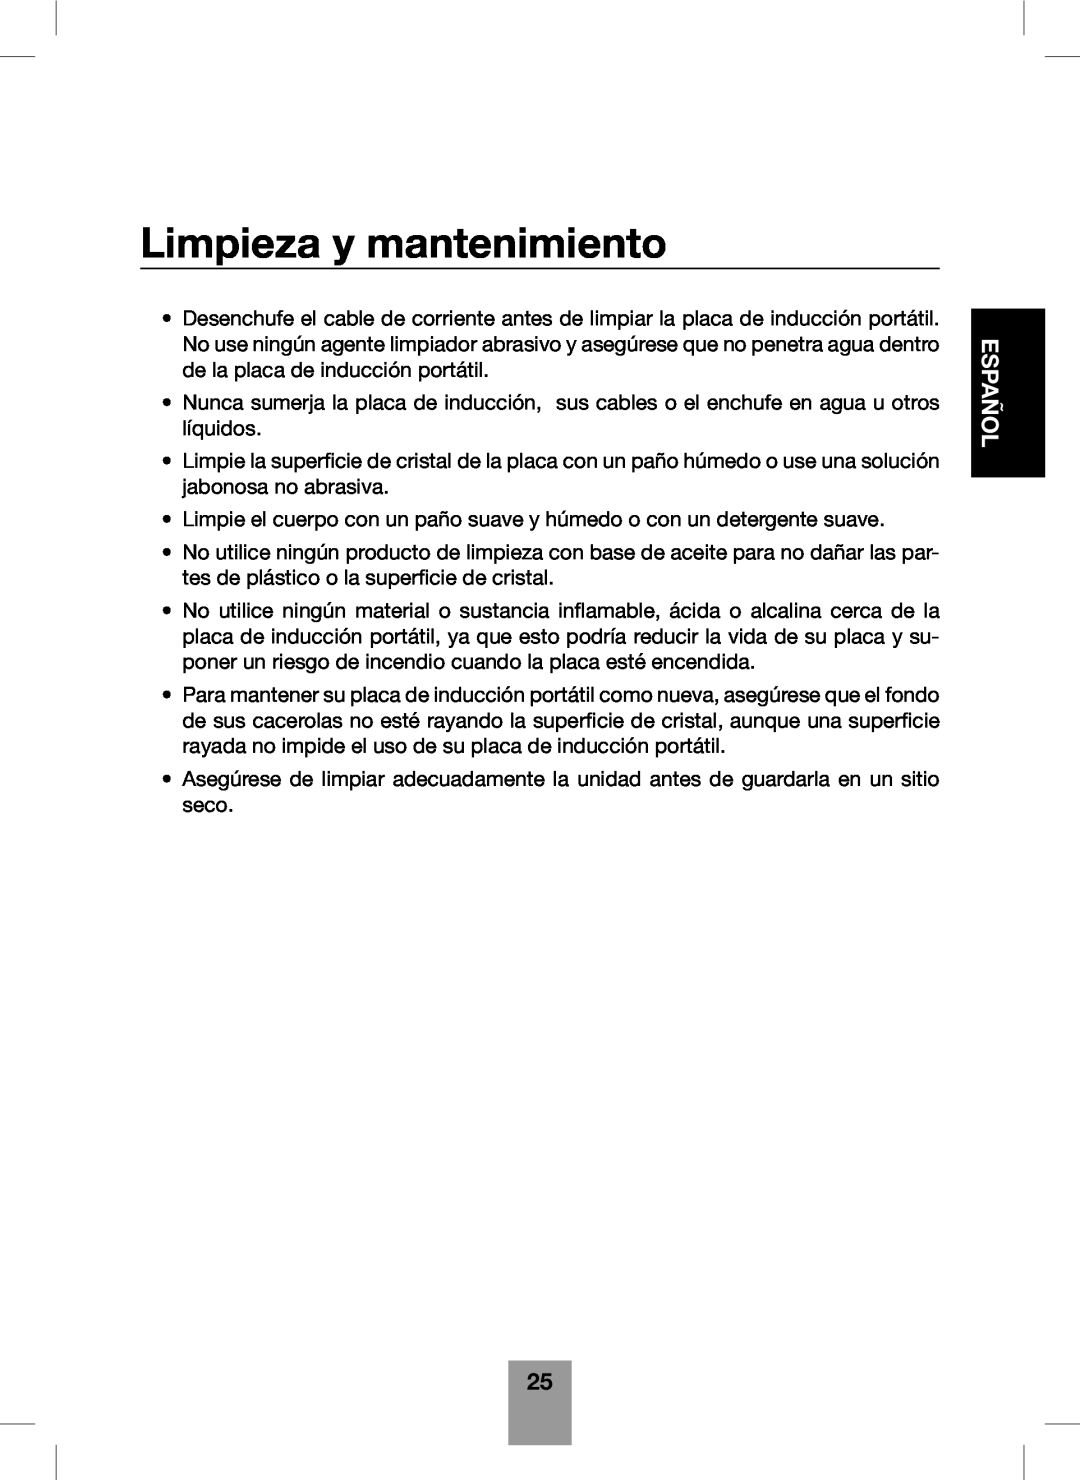 Fagor America Portable Induction Cooktop user manual Limpieza y mantenimiento, Español 